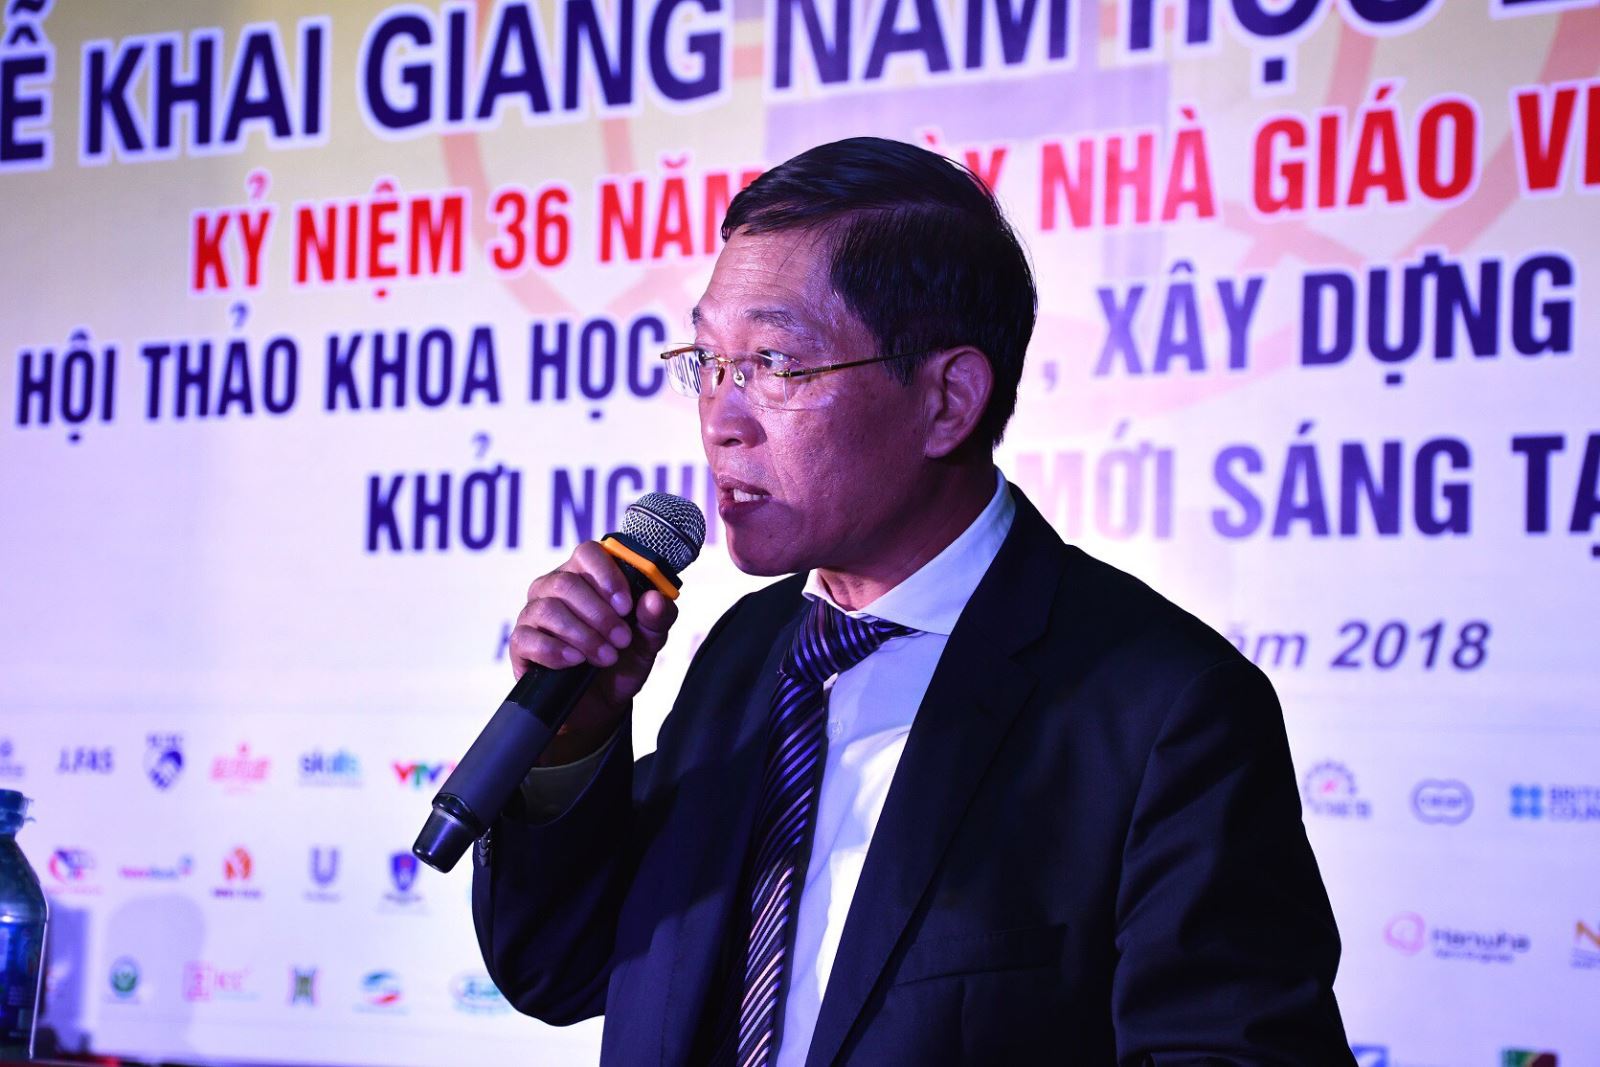 Hội thảo về “Liên kết, xây dựng Hệ sinh thái khởi nghiệp đổi mới sáng tạo tại Hà Nội”